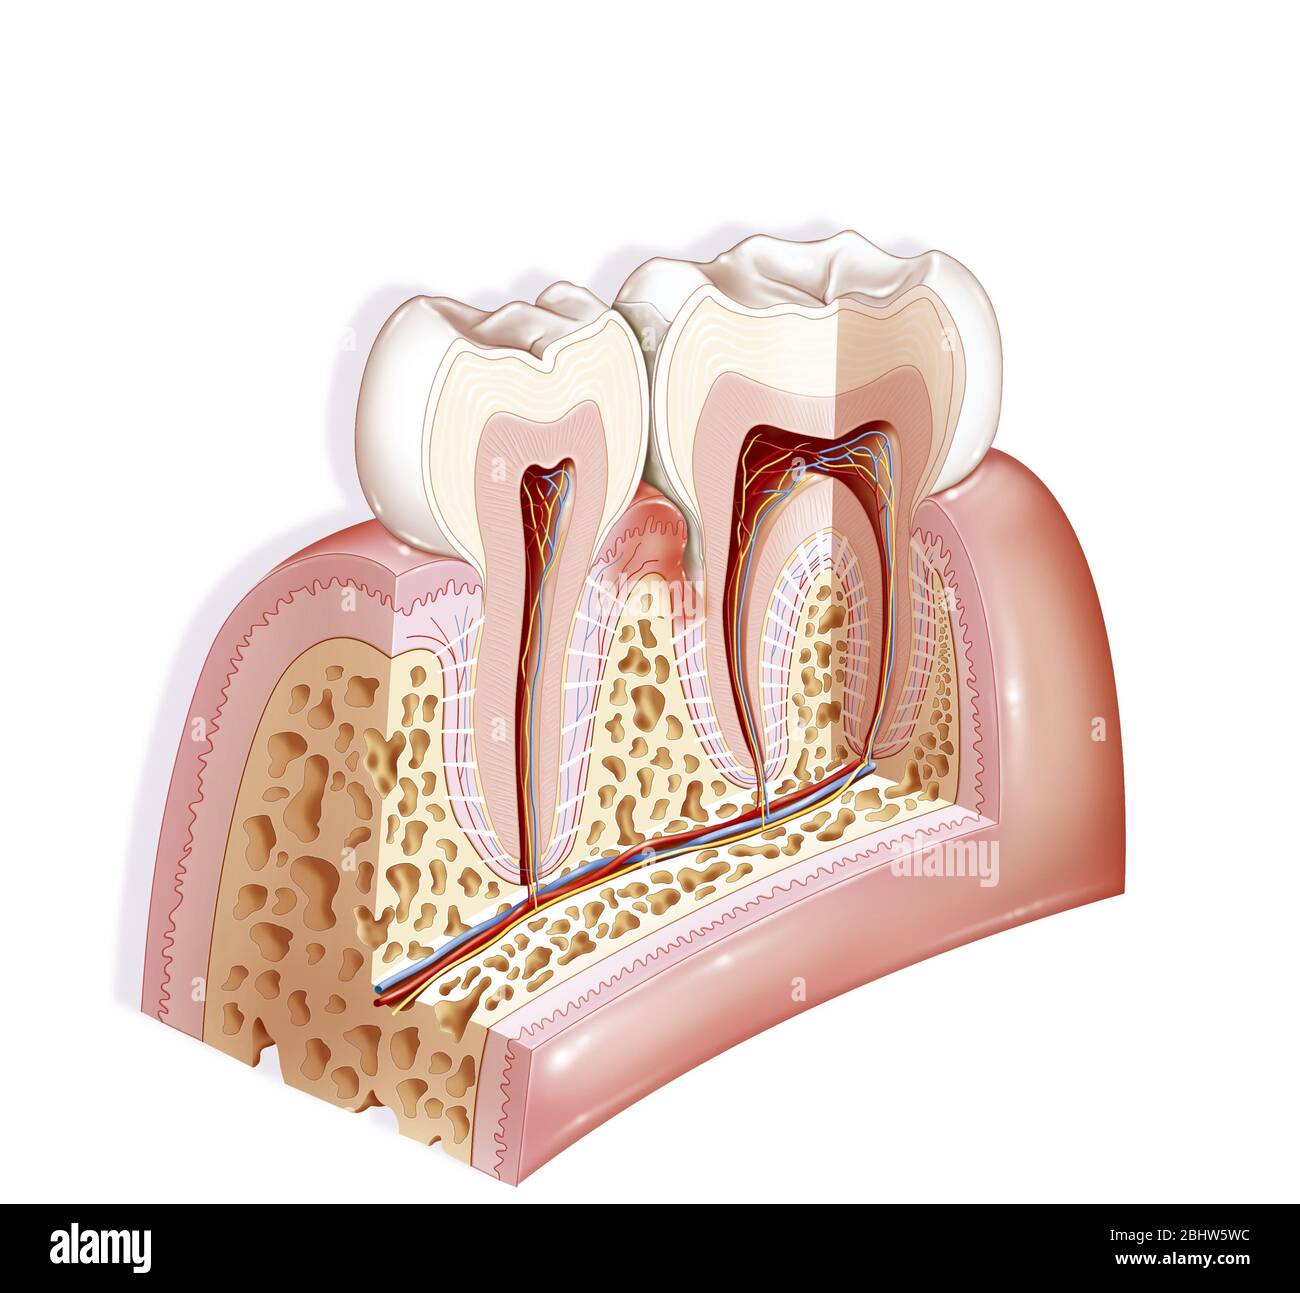 Tasca periodontale, patologia dentale. La tasca periodontale è uno spazio che si crea tra il dente e la gengiva durante la malattia periodontale. IT Foto Stock